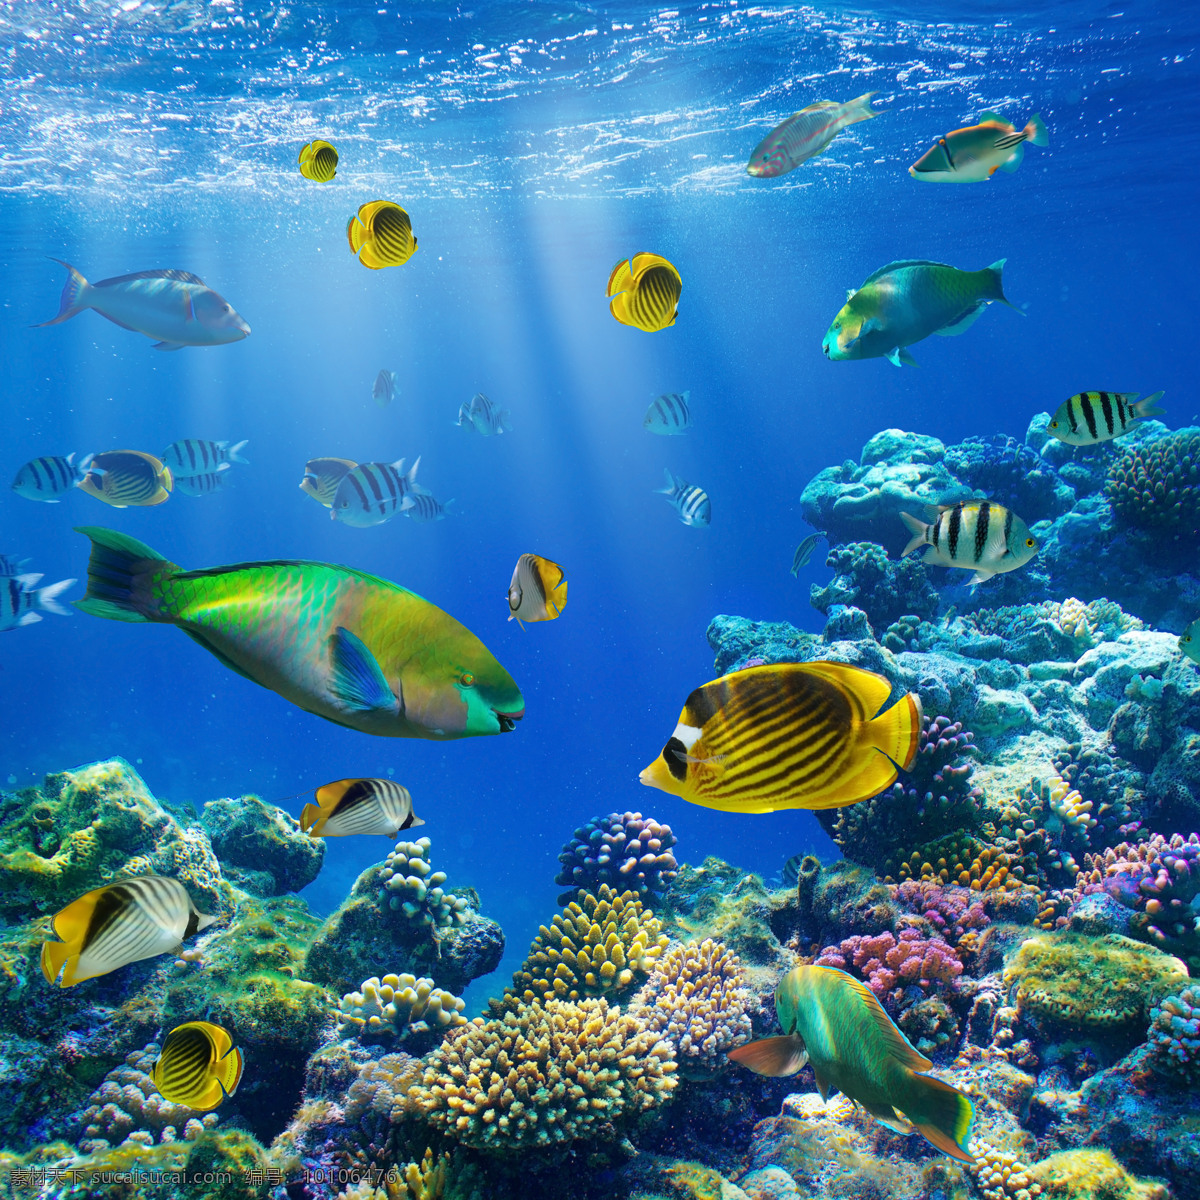 海底世界 鱼 海底 水草 鱼类 海底素材 大海 海水 蓝色 梦幻 唯美 鱼群 海底世界图片 珊瑚 海洋 海洋生物 生物世界 动物生物